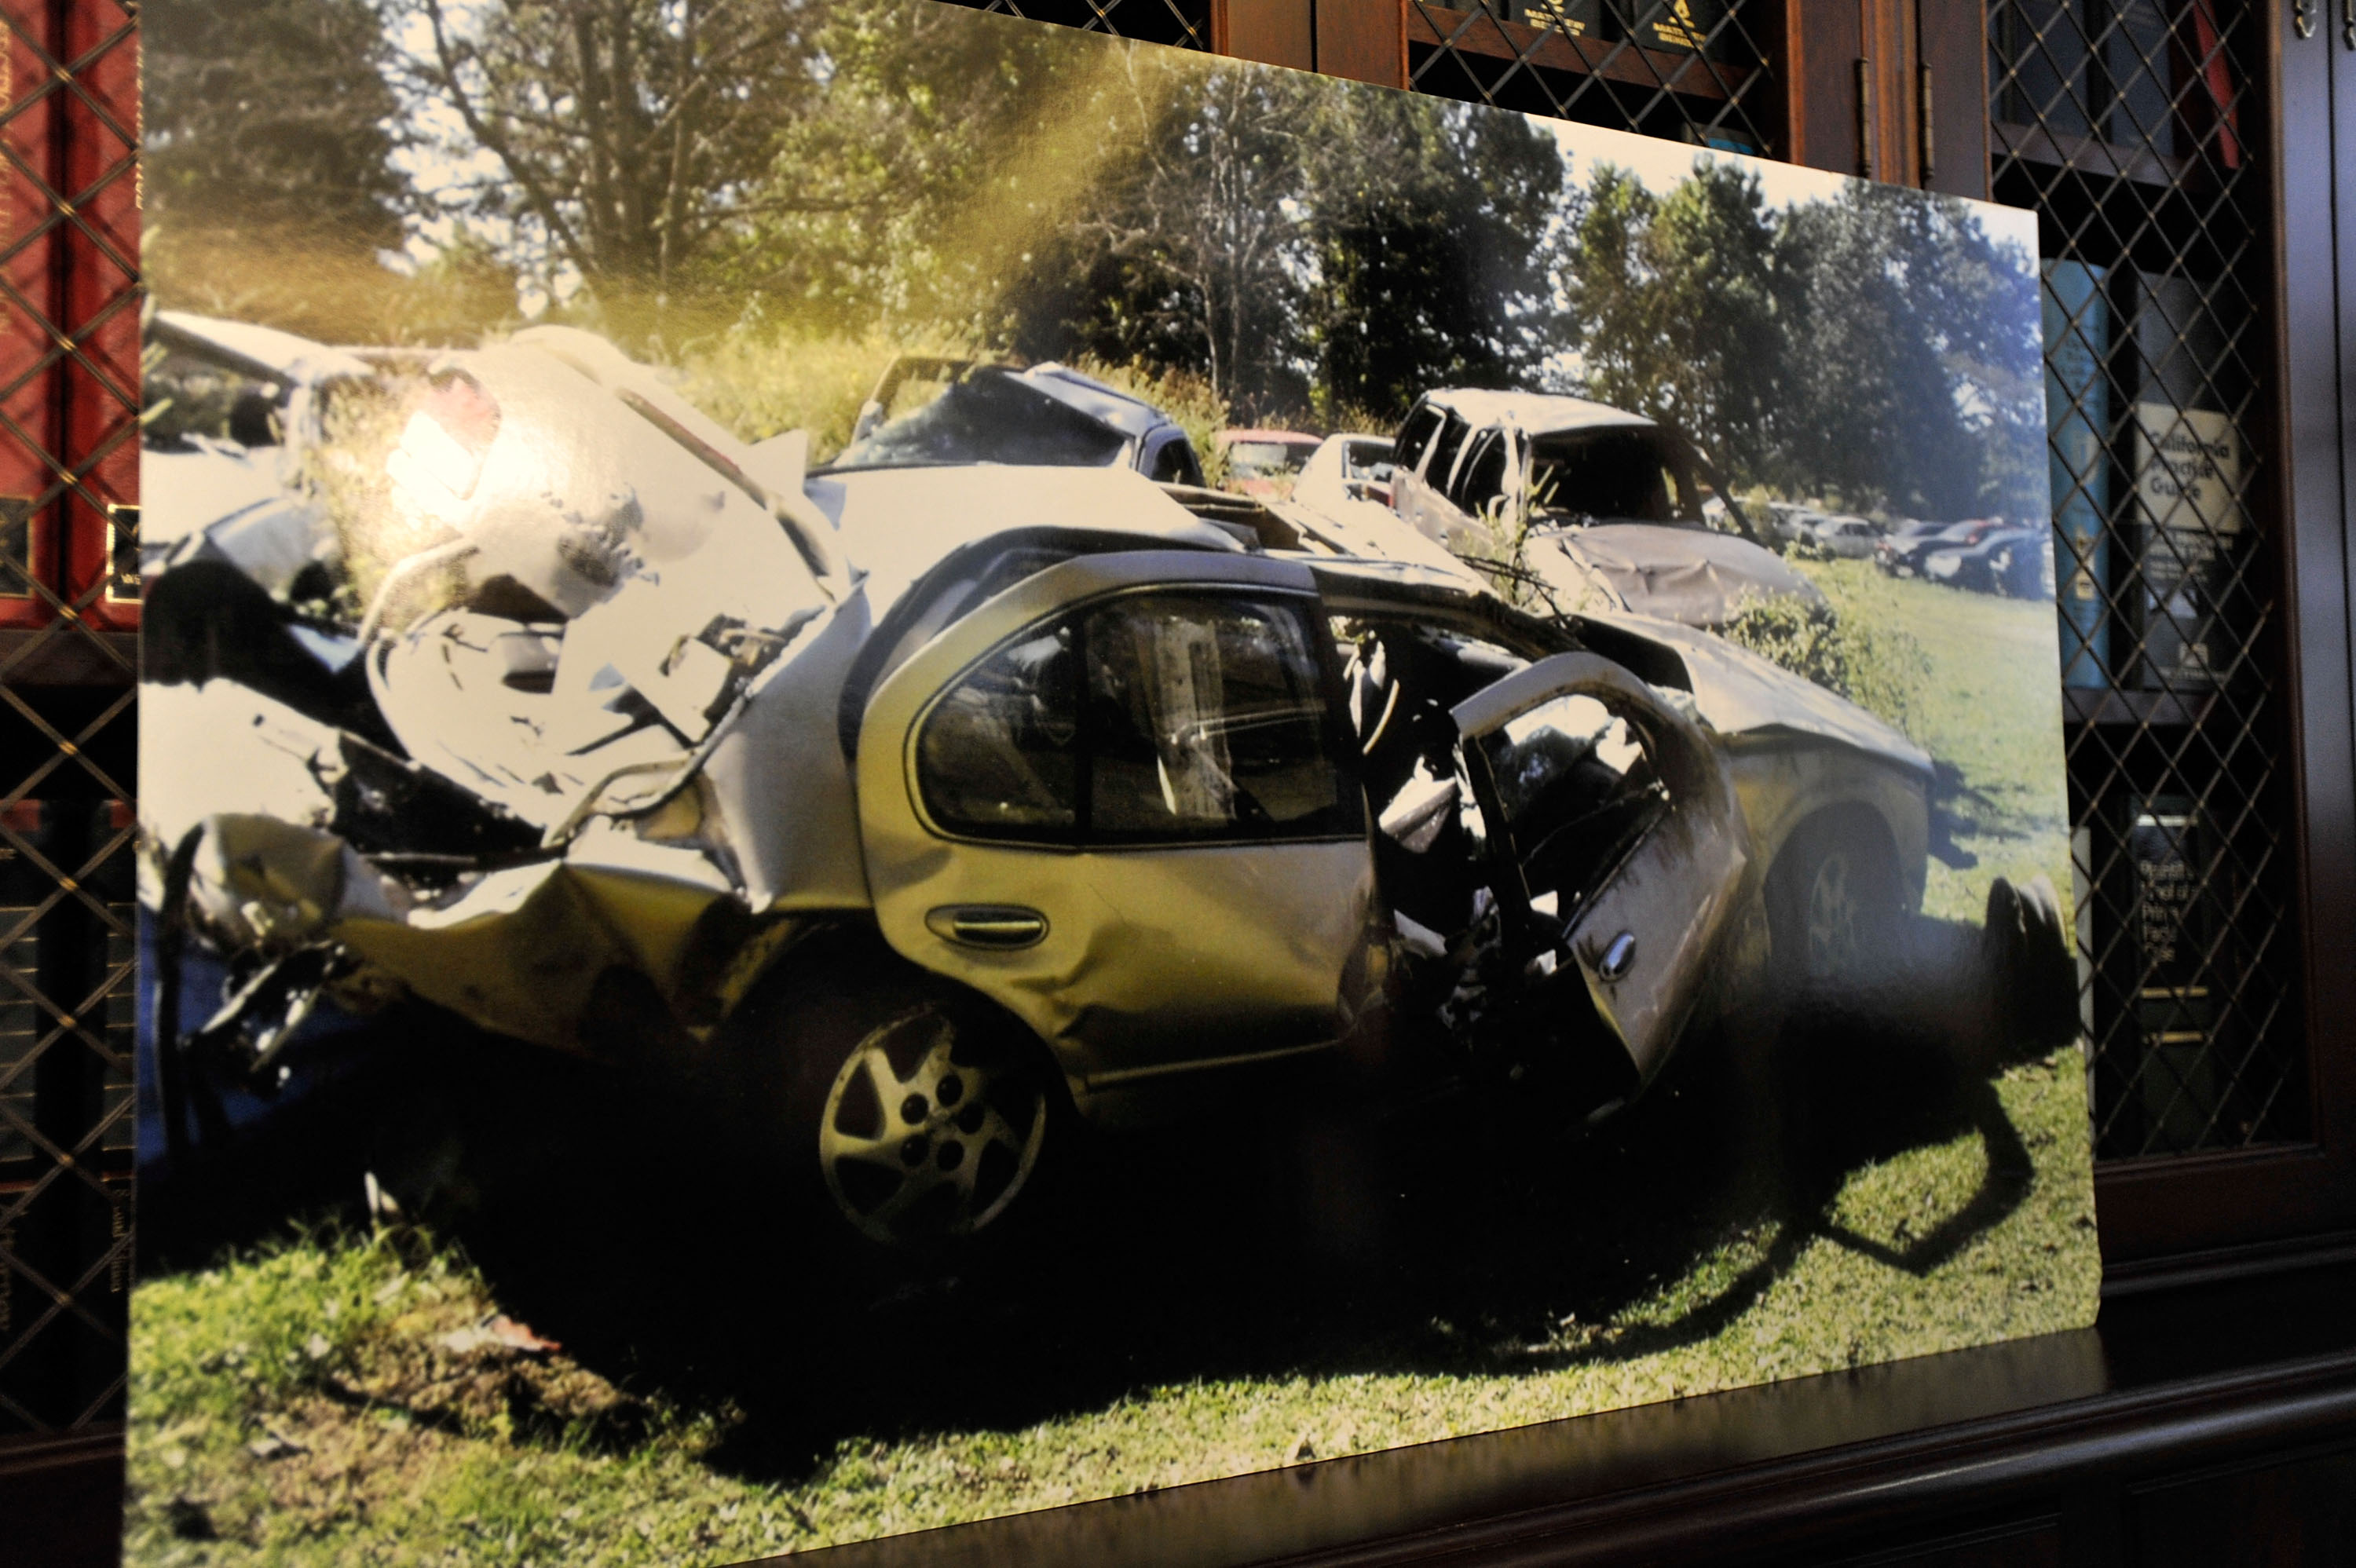 Captura del estado en que quedó el auto del actor tras el accidente. Créditos:CHARLEY GALLAY / GETTY IMAGES NORTH AMERICA / GETTY IMAGES VIA AFP